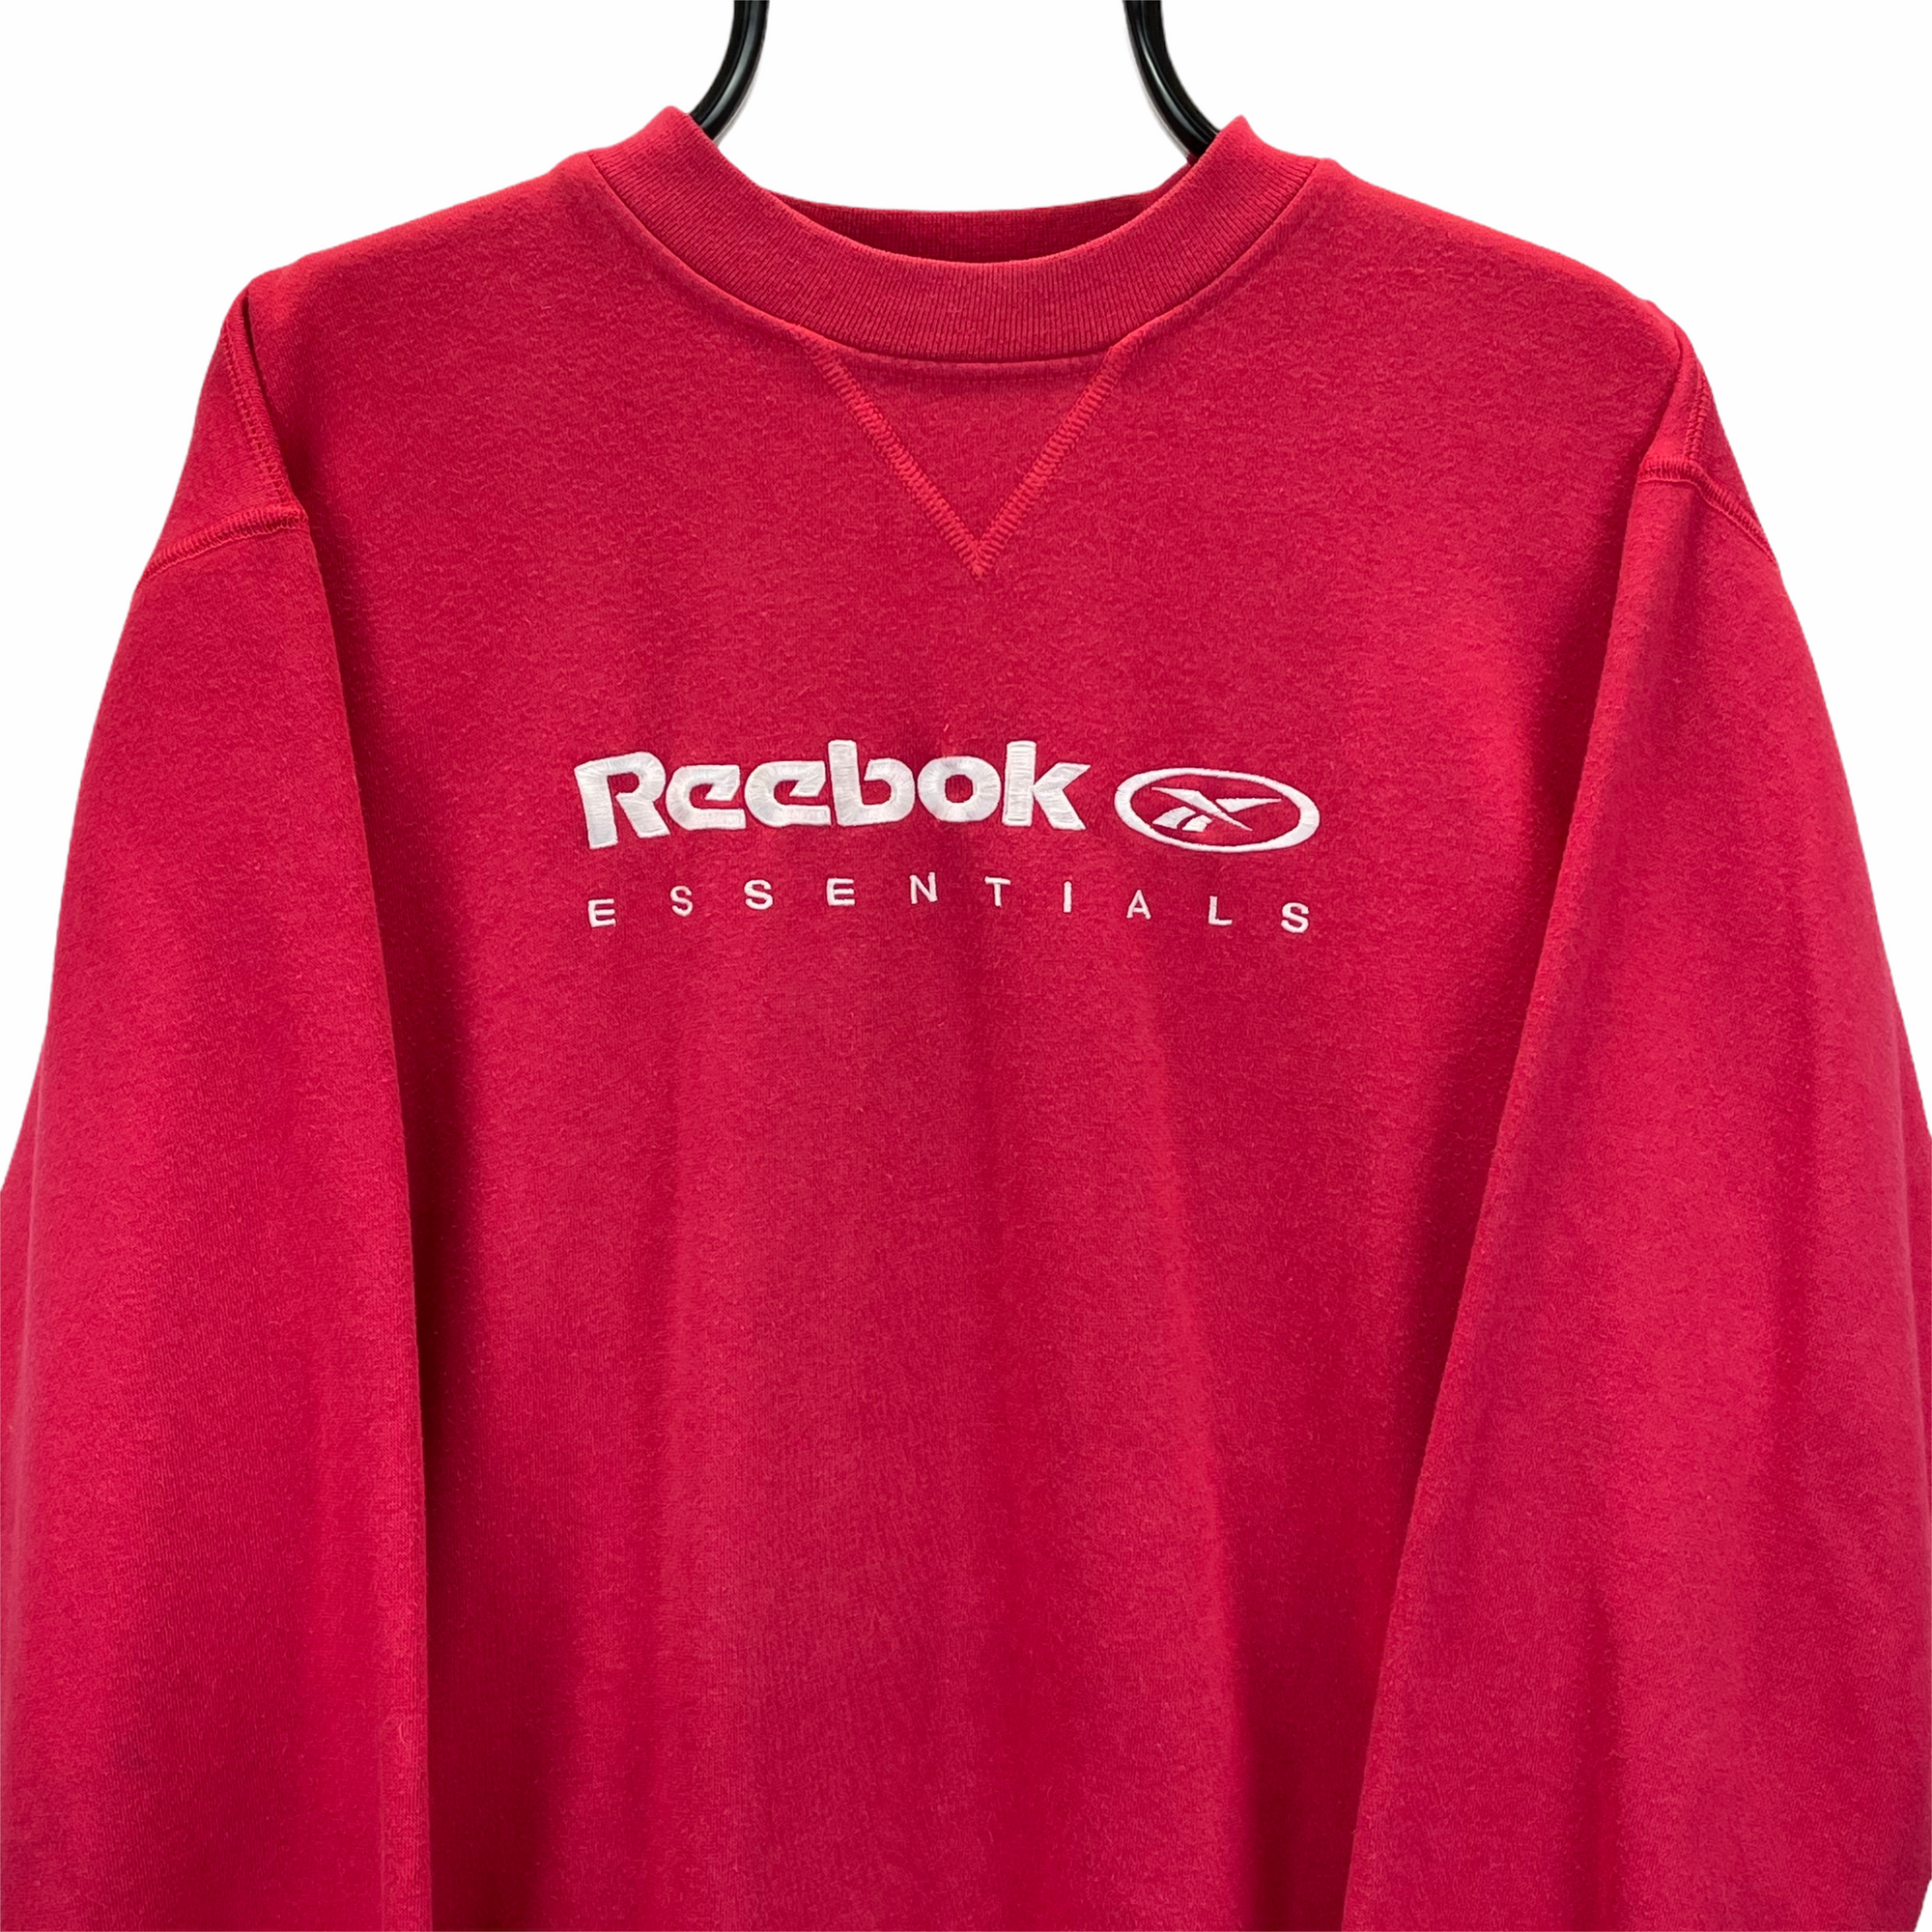 Vintage 90s Reebok Spellout Sweatshirt in Pink - Men's Small/Women's Medium